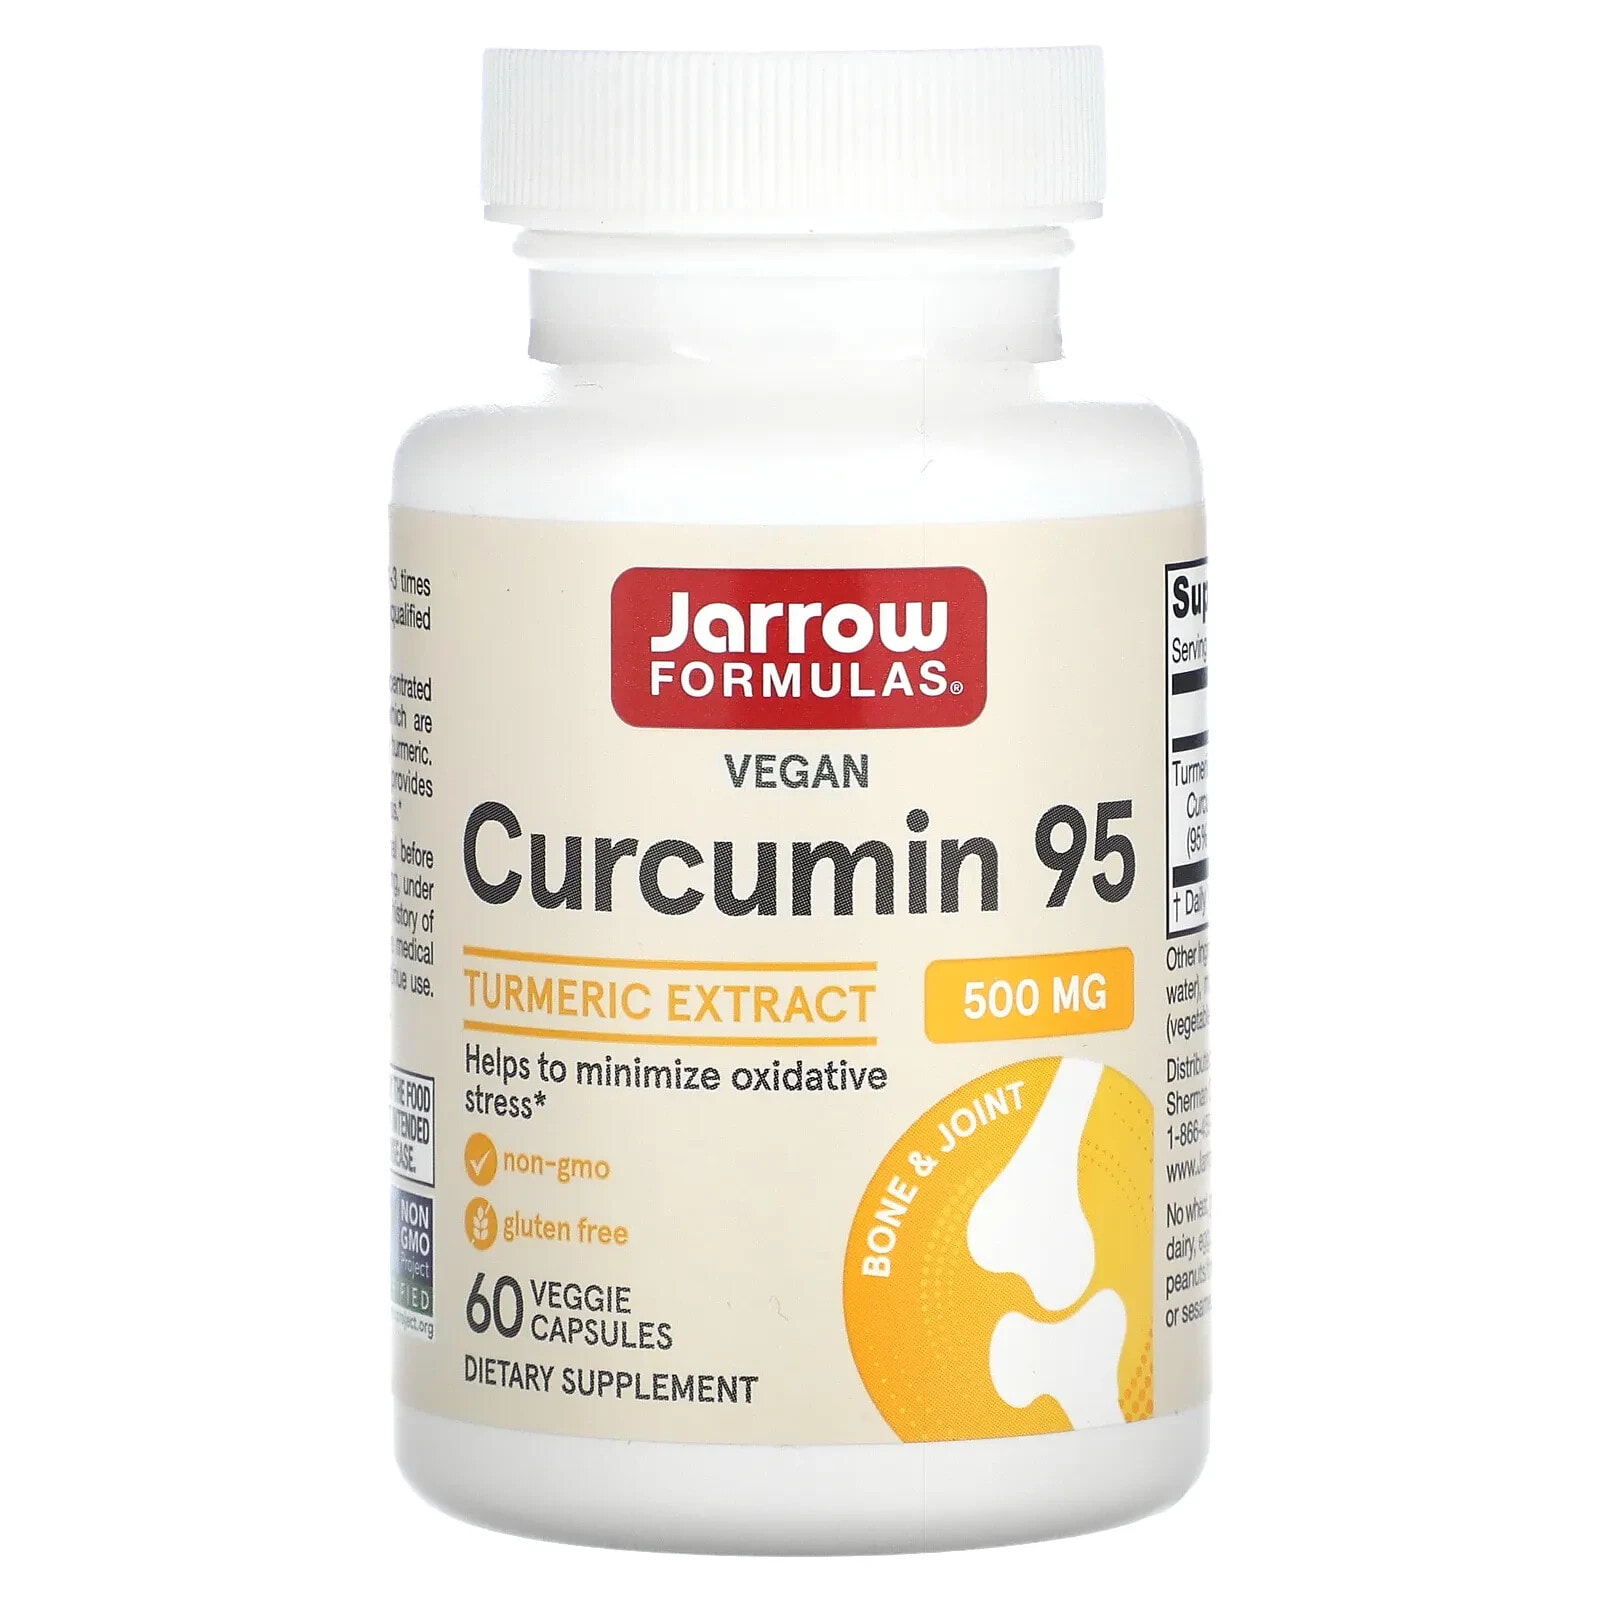 Curcumin 95, Turmeric Extract, 500 mg, 60 Veggie Capsules